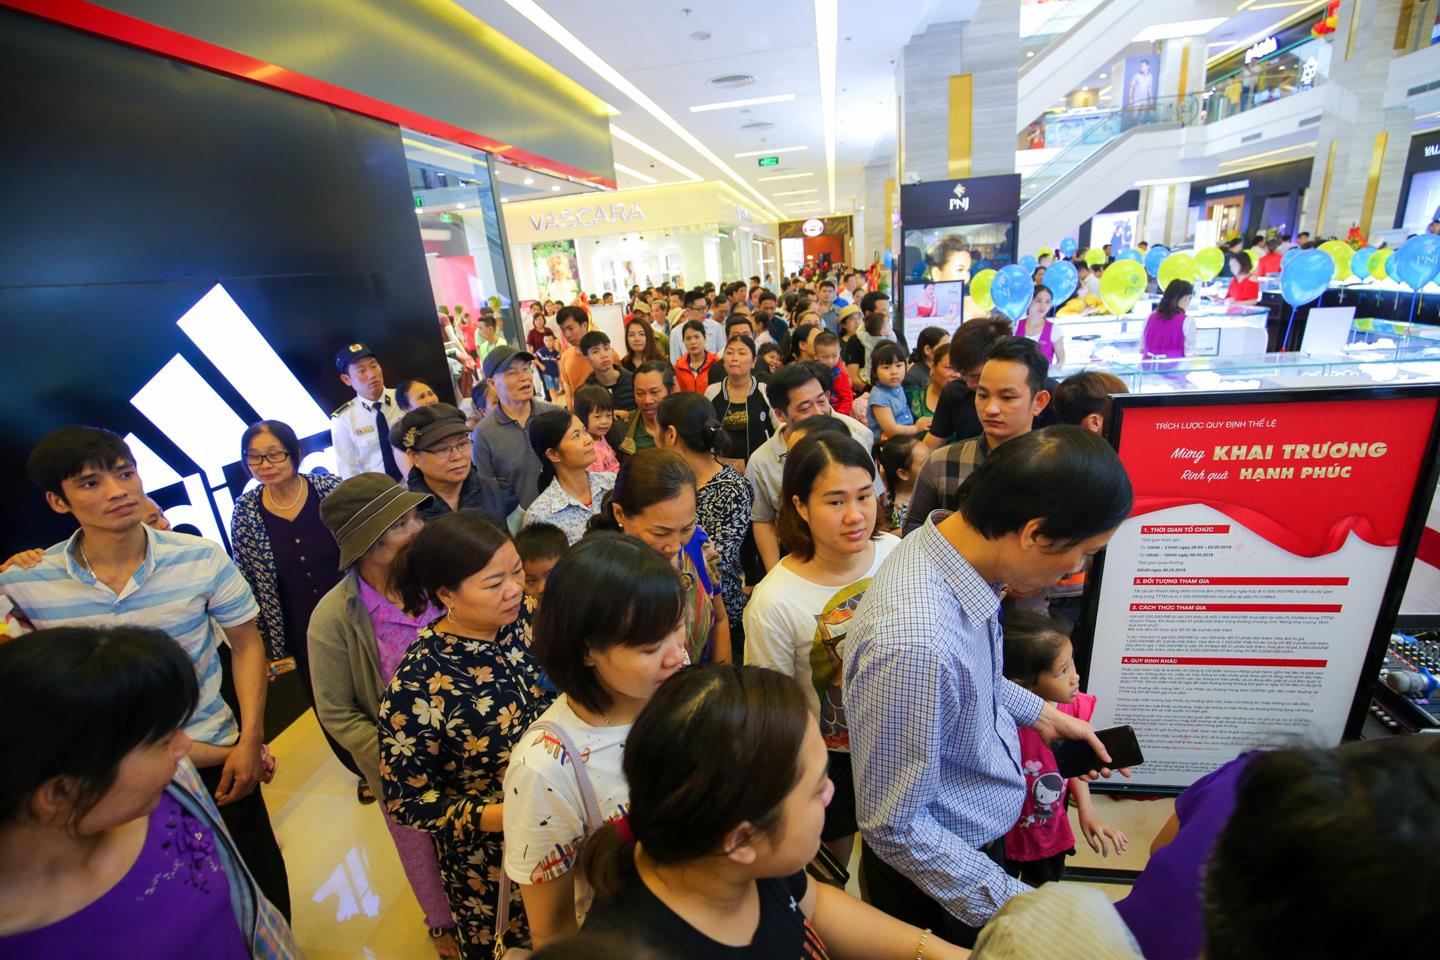 Sự kiện khai trương Vincom tại Thanh Hóa, Lâm Đồng và Long An thu hút hàng nghìn khách hàng đến mua sắm vui chơi